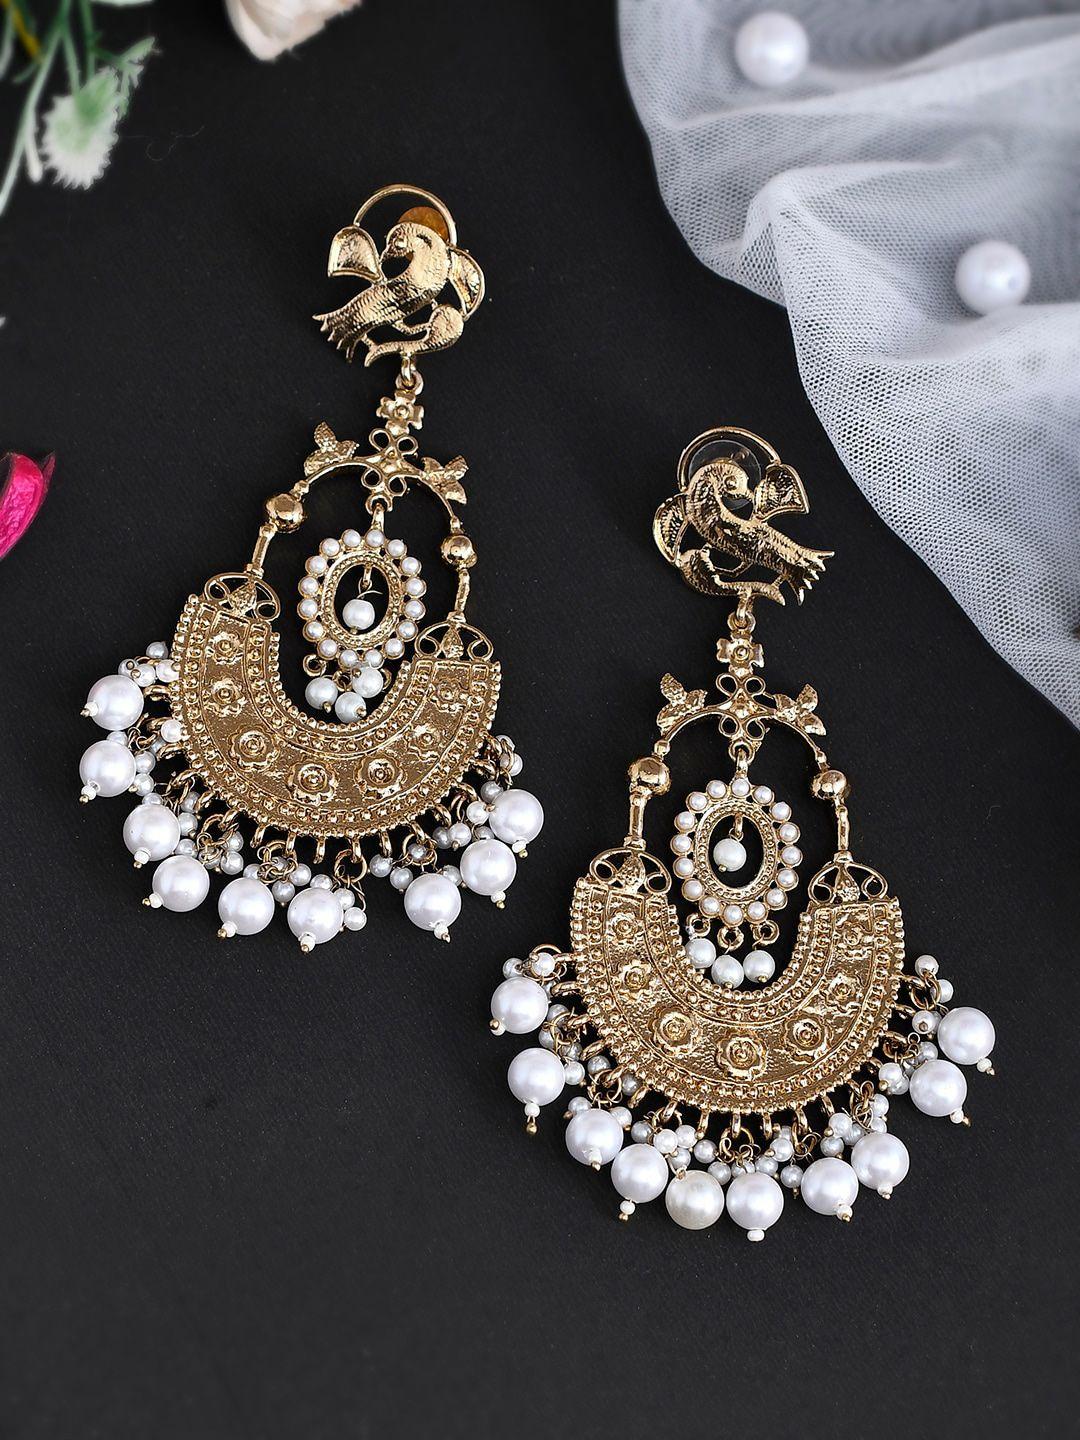 shoshaa women peacock shaped chandbalis earrings